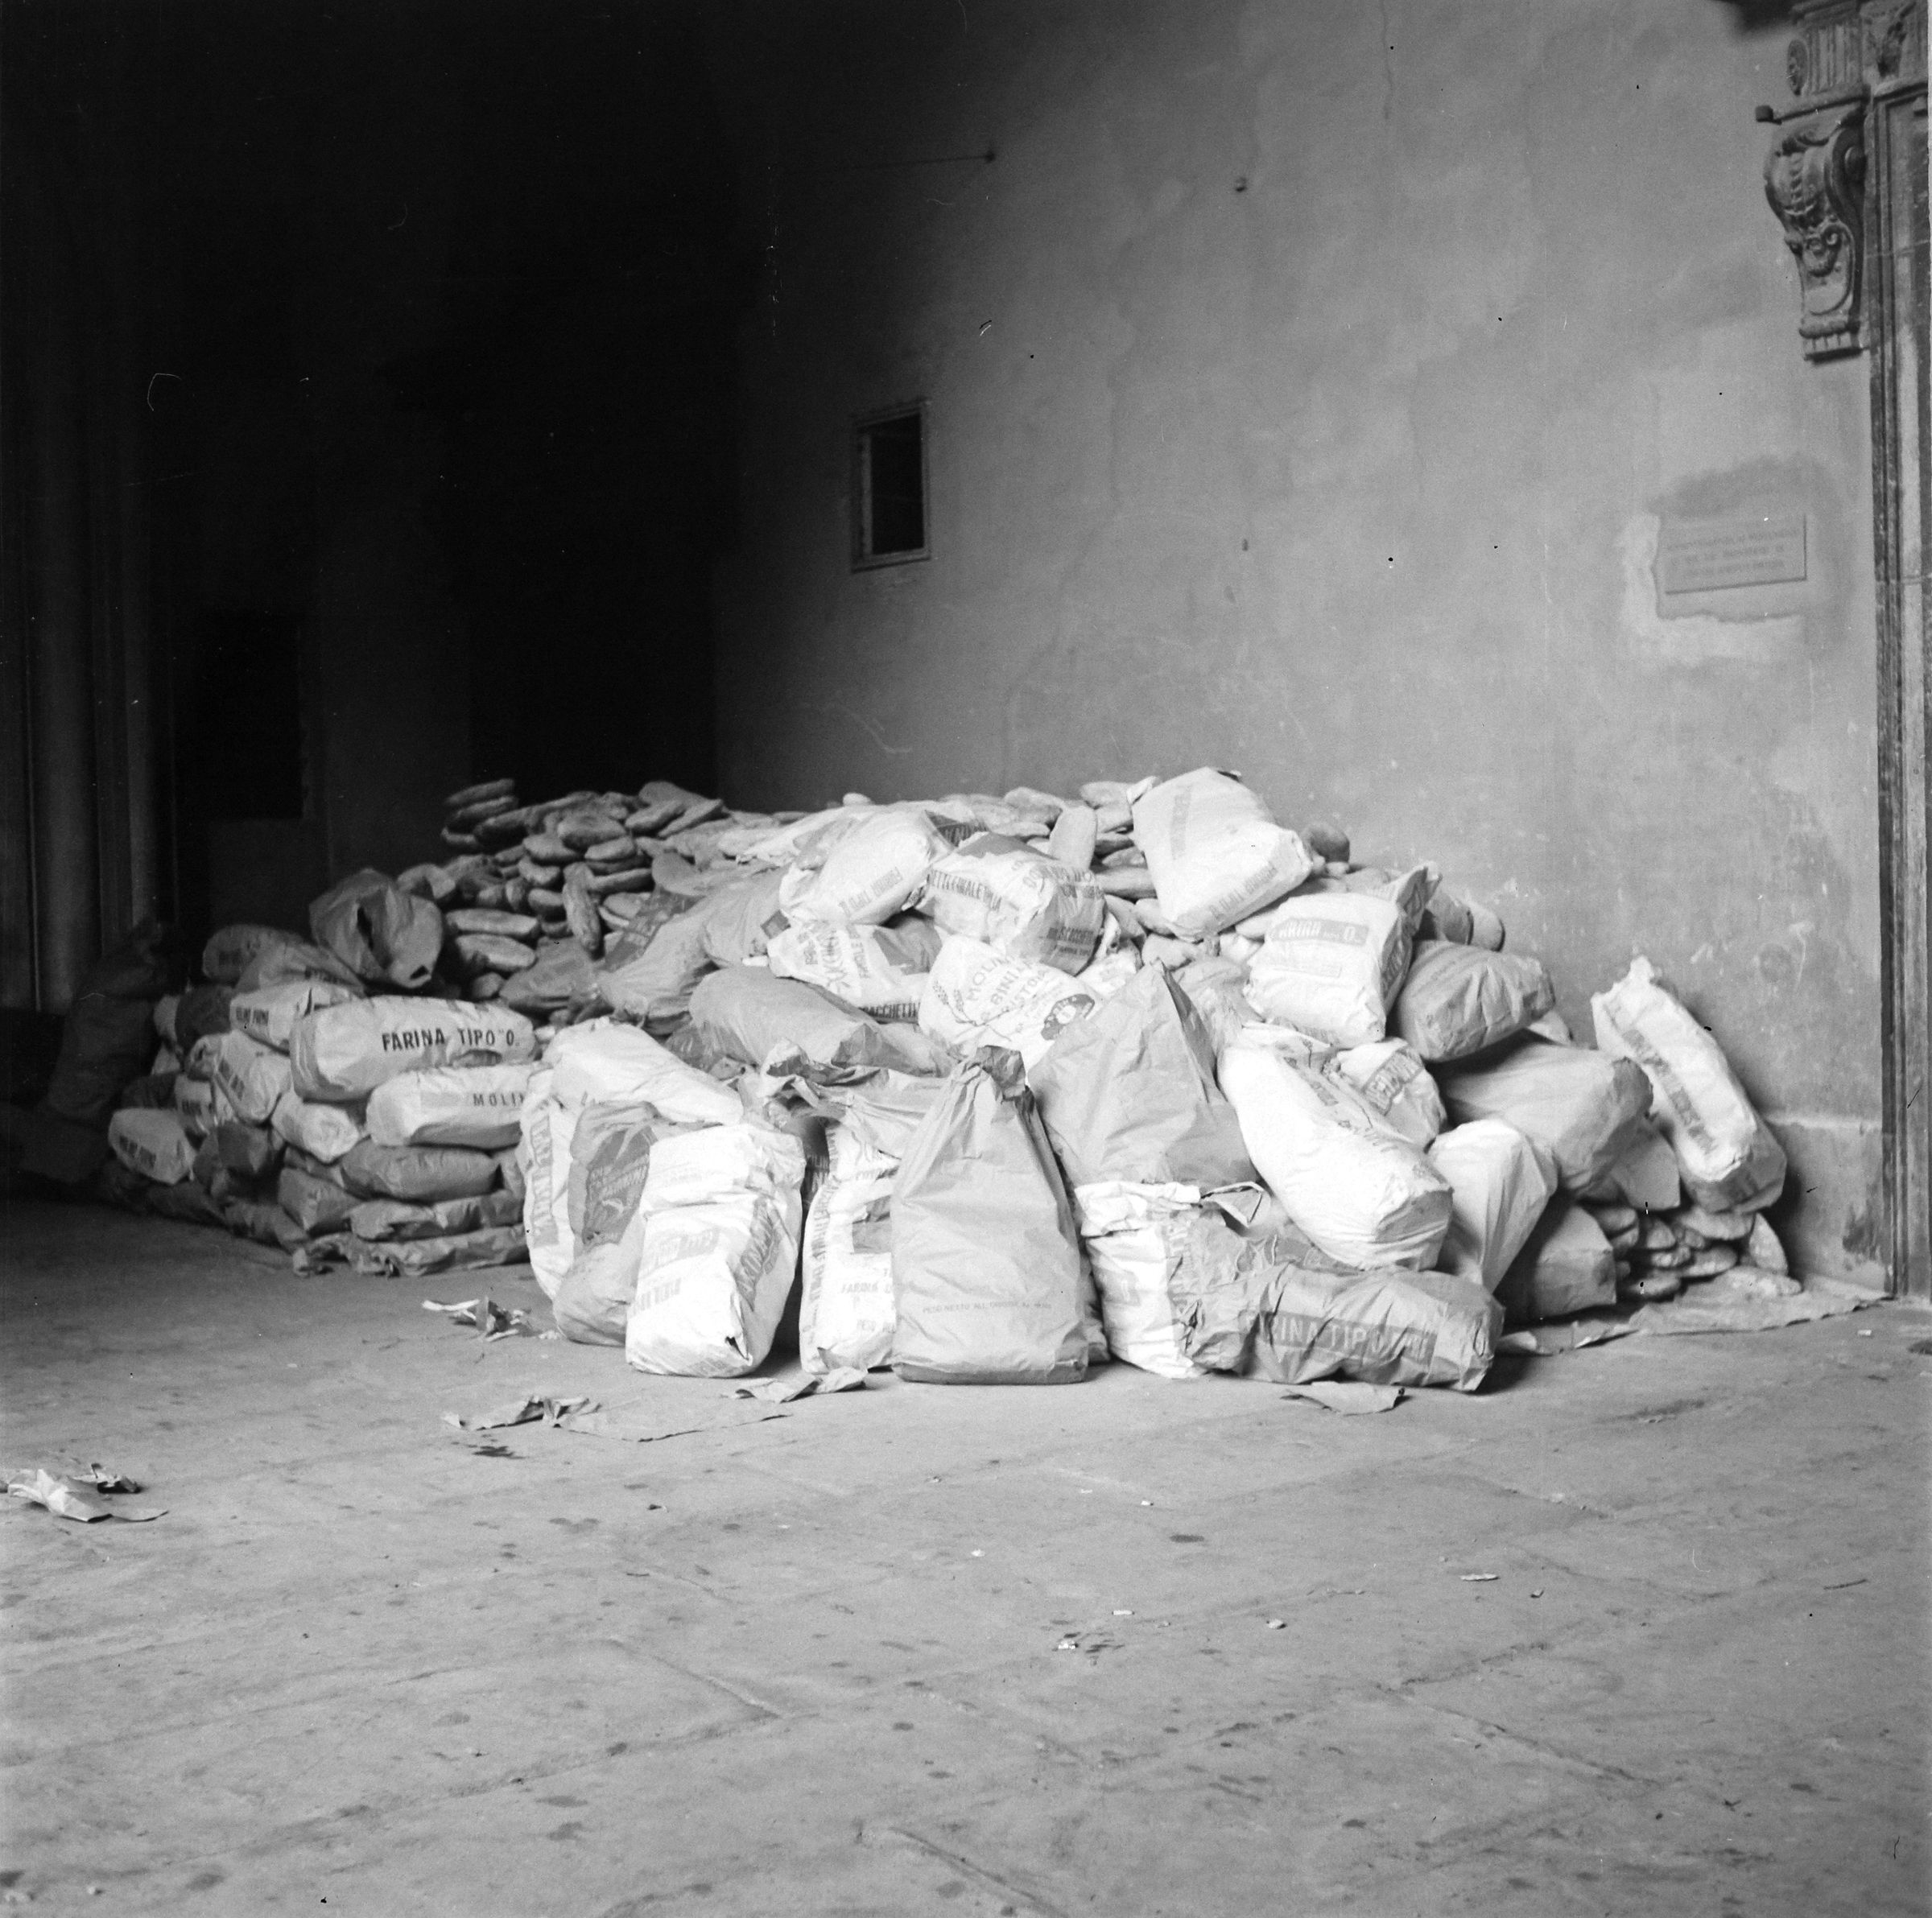 Fotografo non identificato, Firenze - Palazzo Pitti, sacchi accatastati di pane per gli alluvionati nel cortile del palazzo, 1966, gelatina ai sali d'argento, 6x6cm, N003770